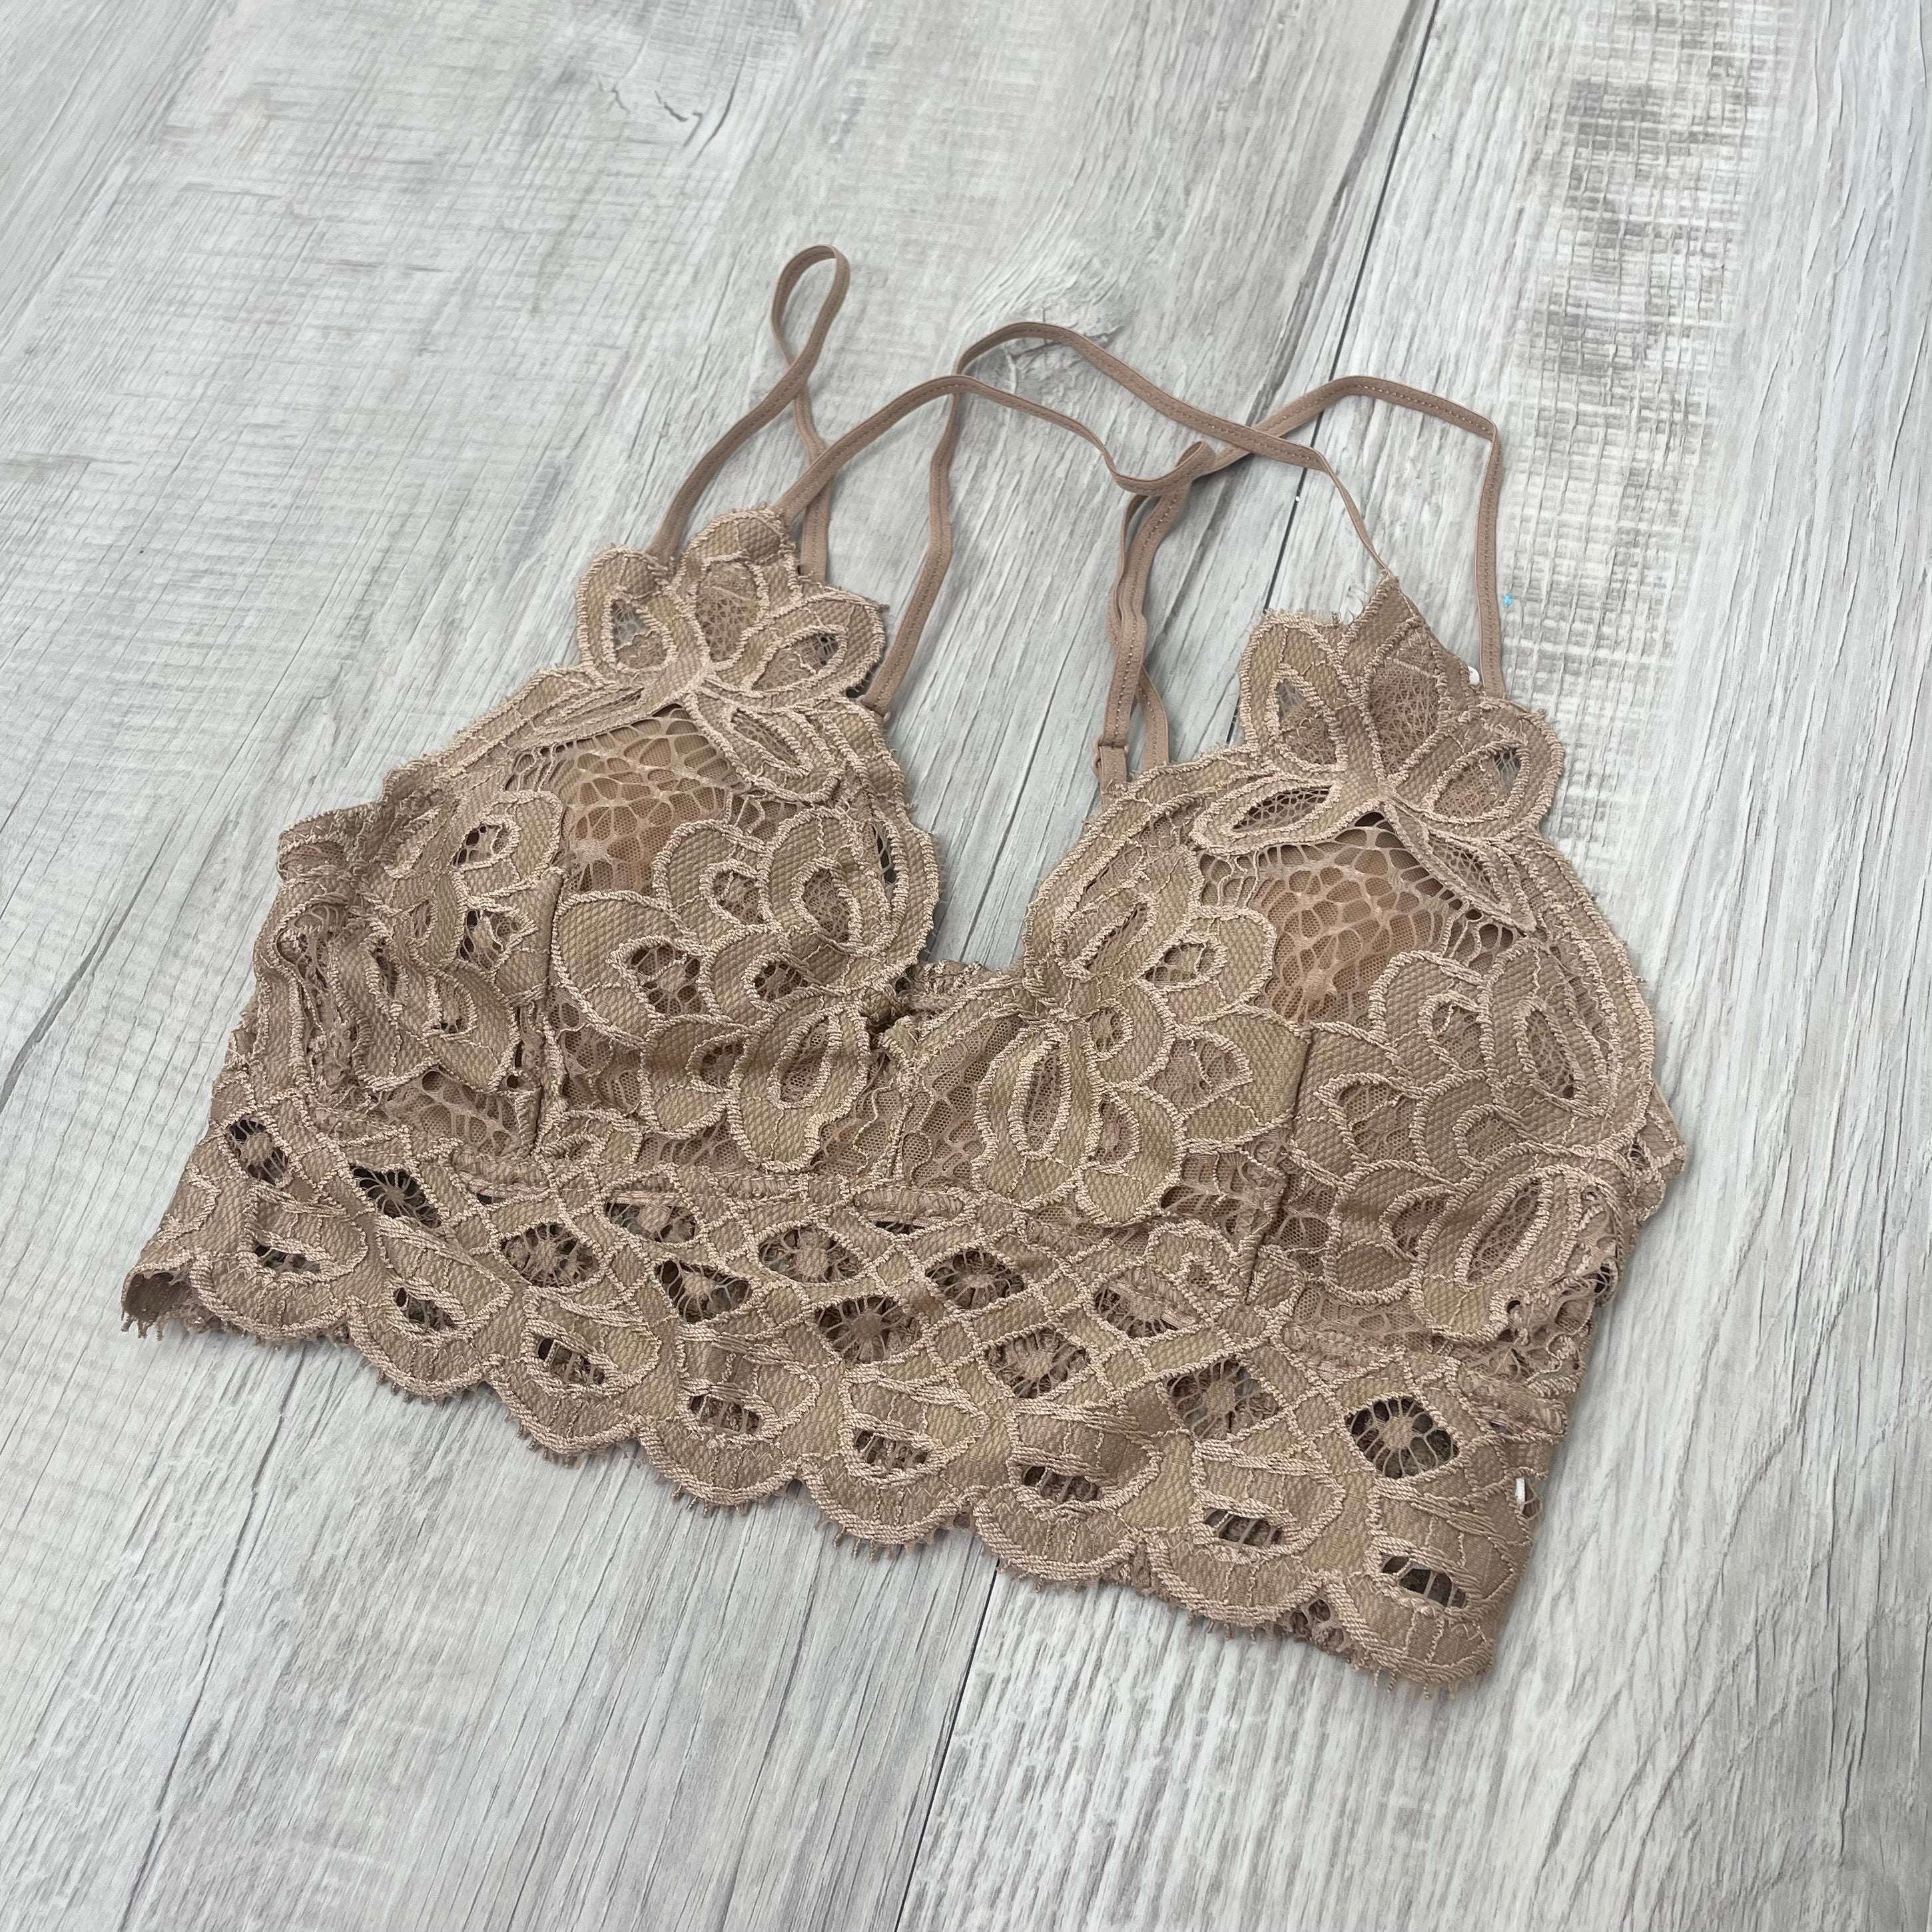 Crochet Lace Bralette